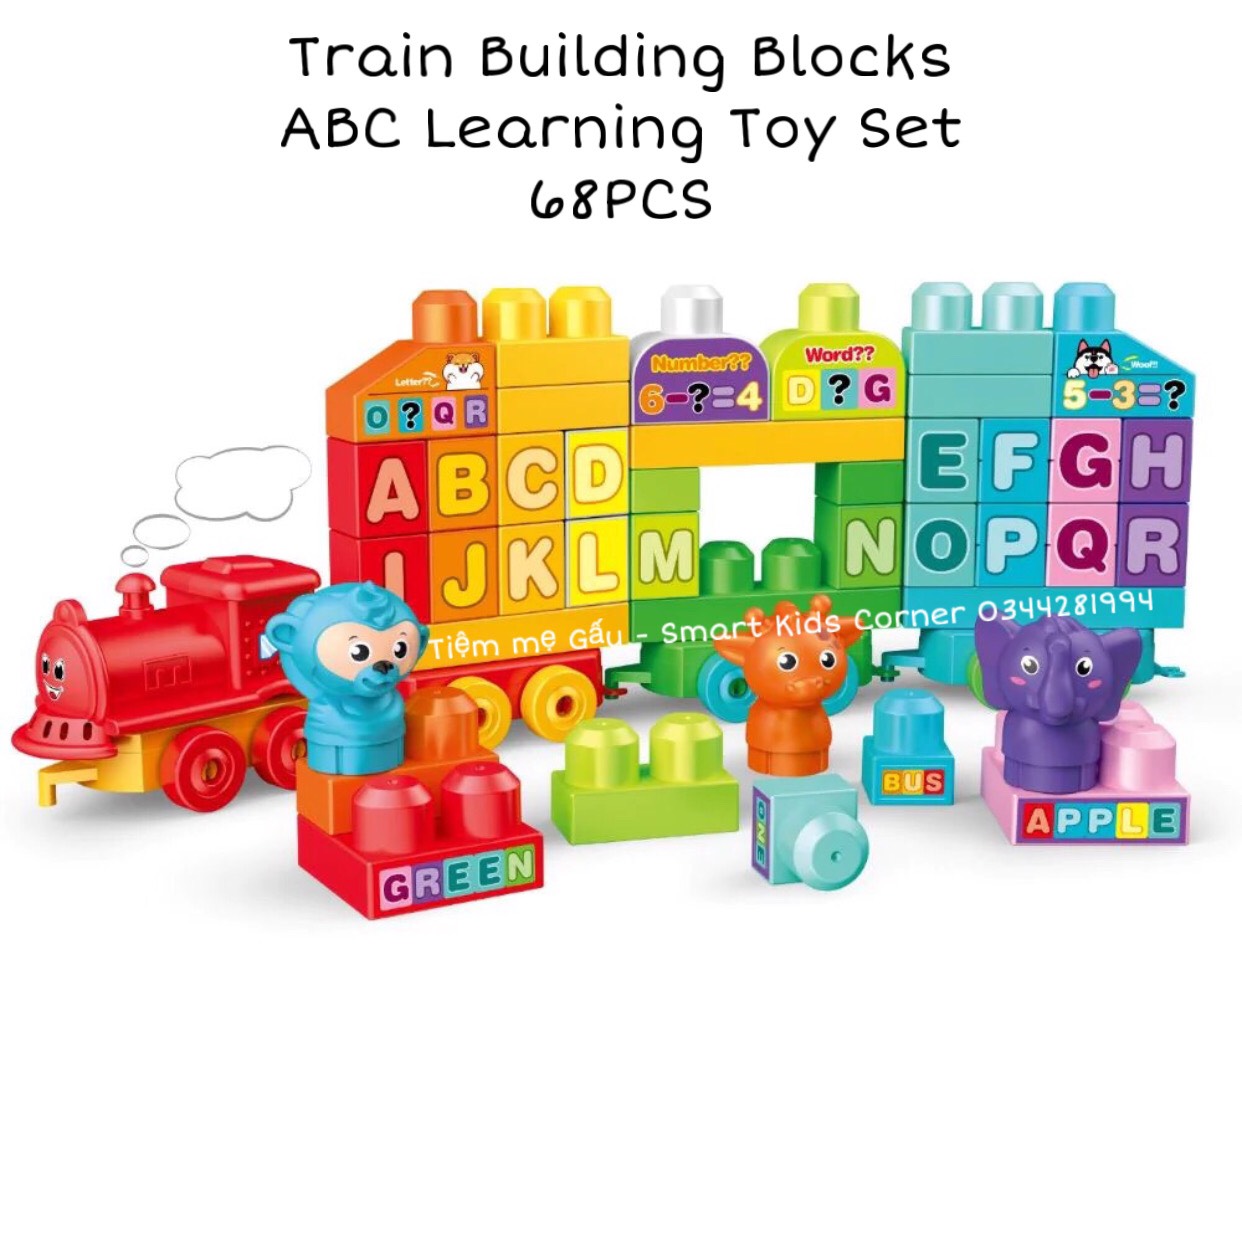 Đồ Chơi Giáo Dục Sớm Lego Size Duplo Lắp Ghép Lắp Ráp Đoàn Tàu Chở Chữ Cái 68 Chi Tiết ABC Blocks Building Toy